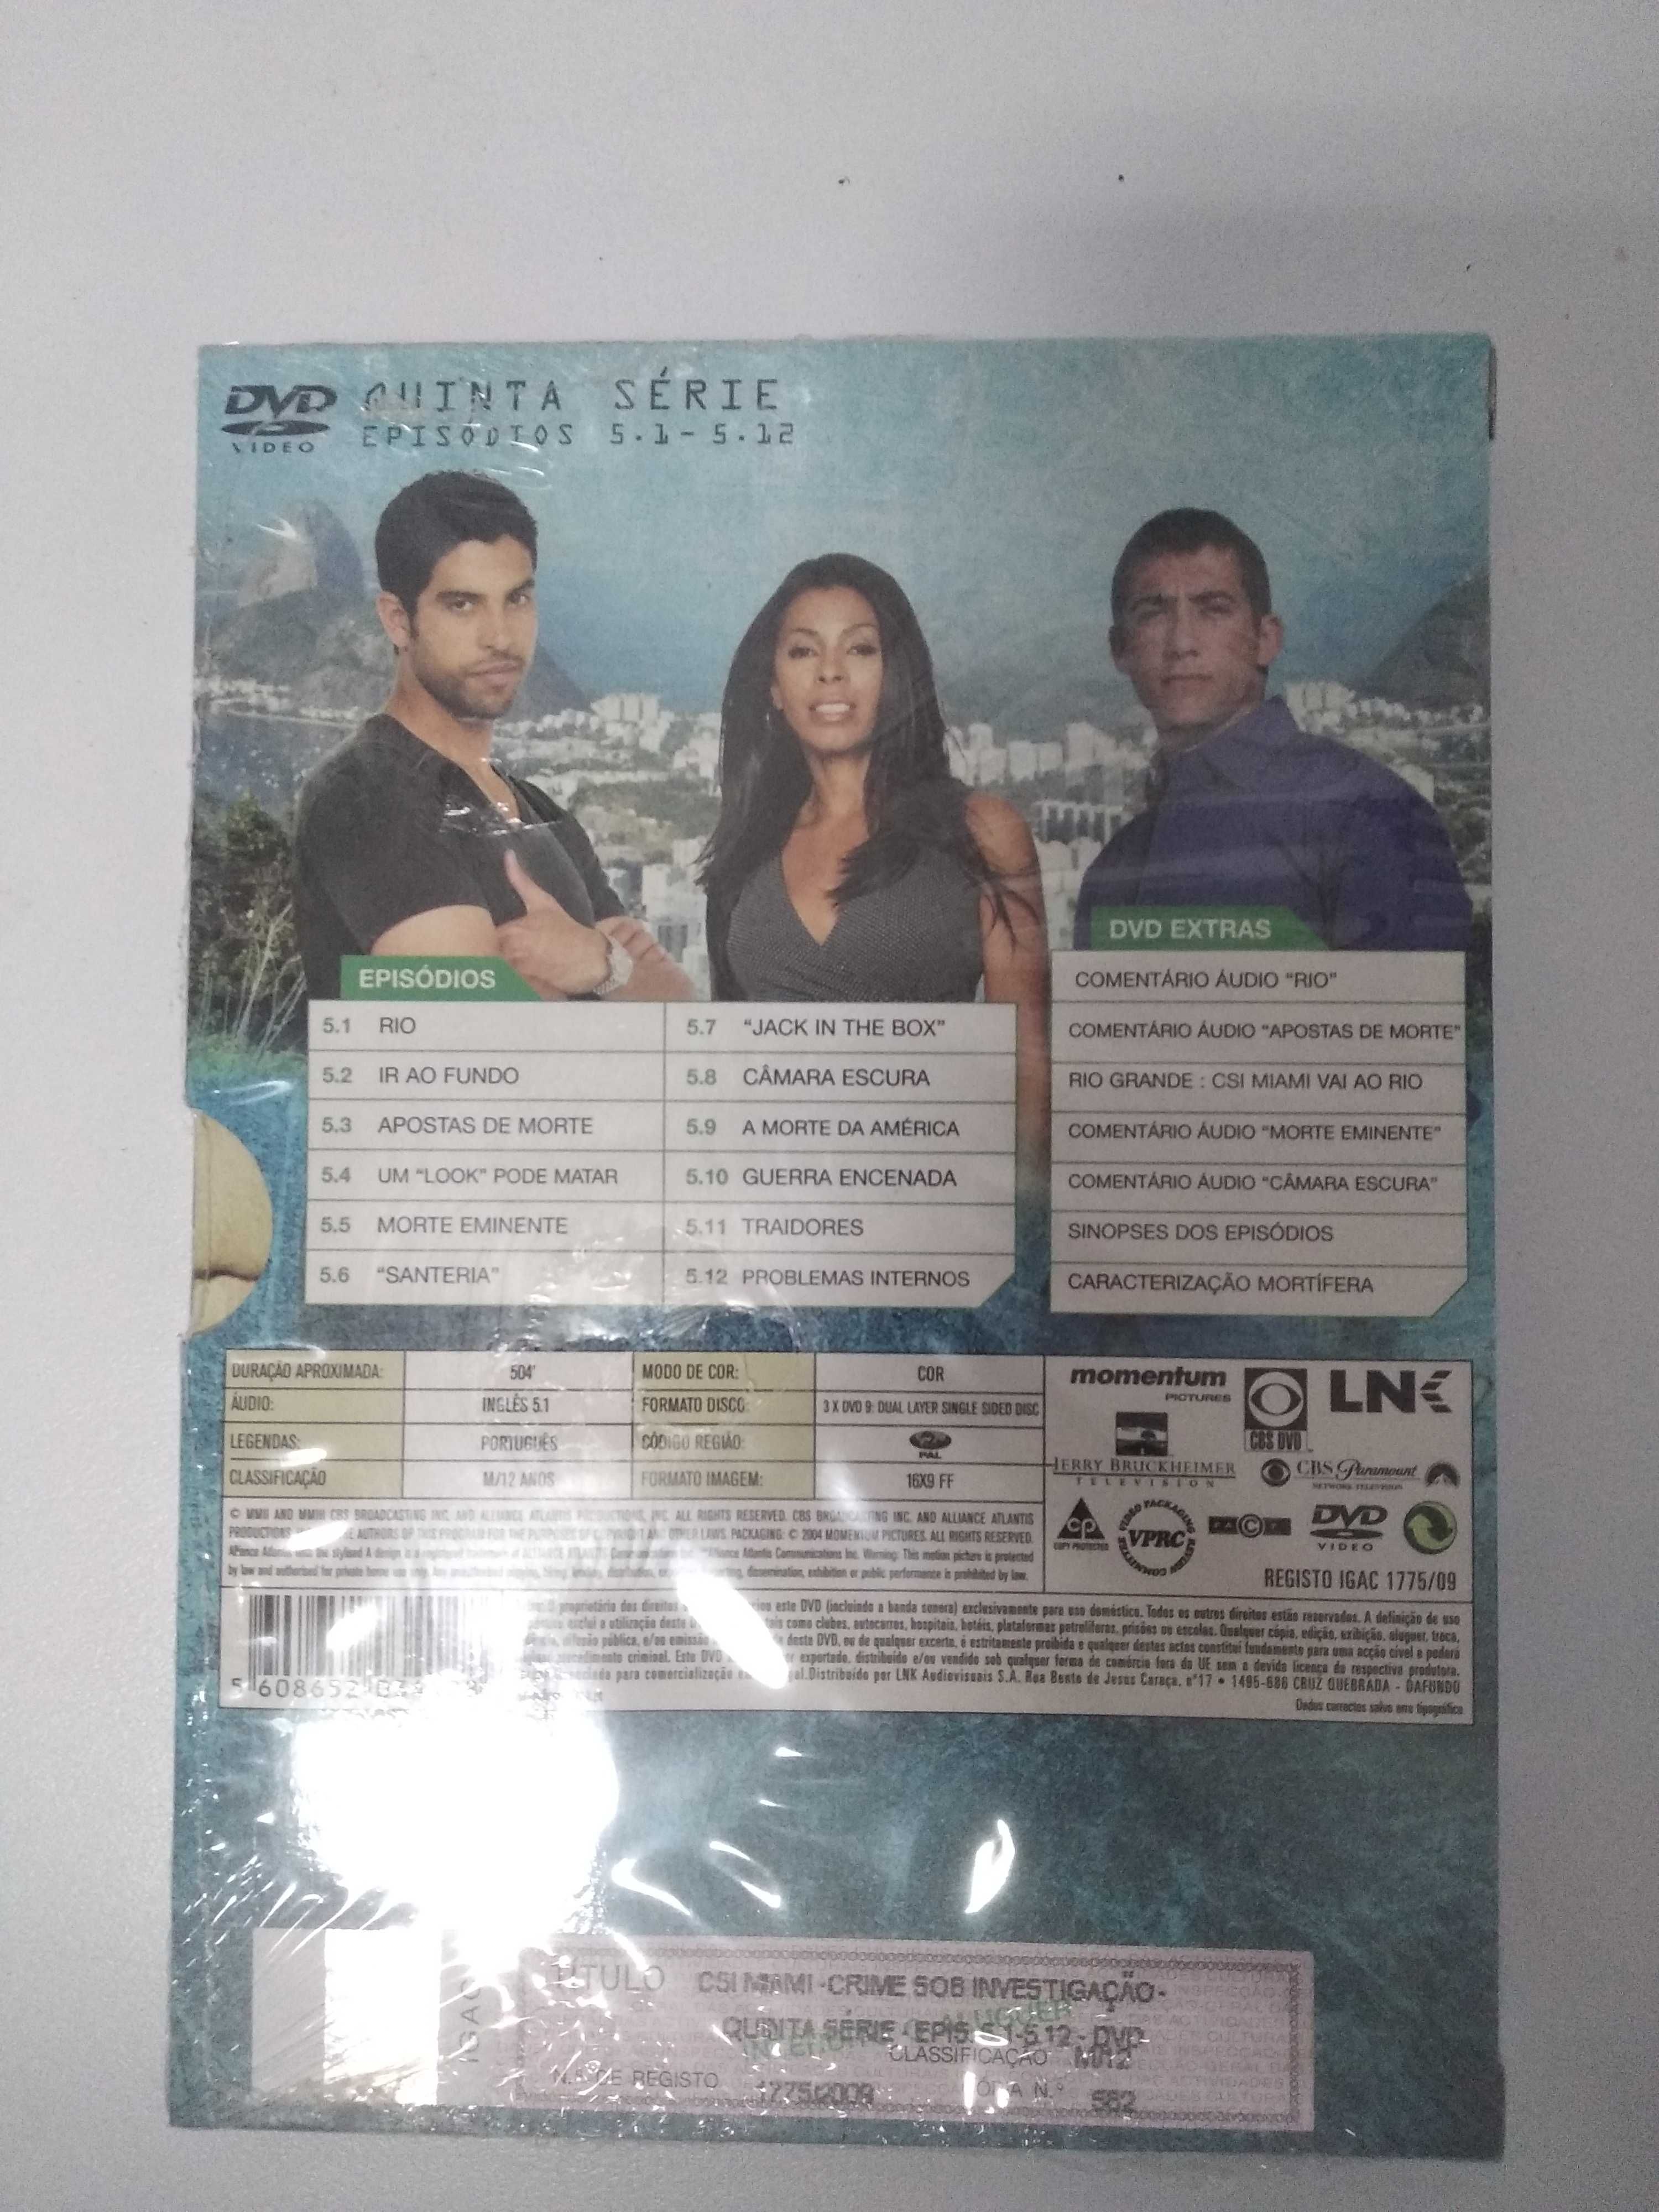 Serie DVD  - Csi Miami - 5ª temporada